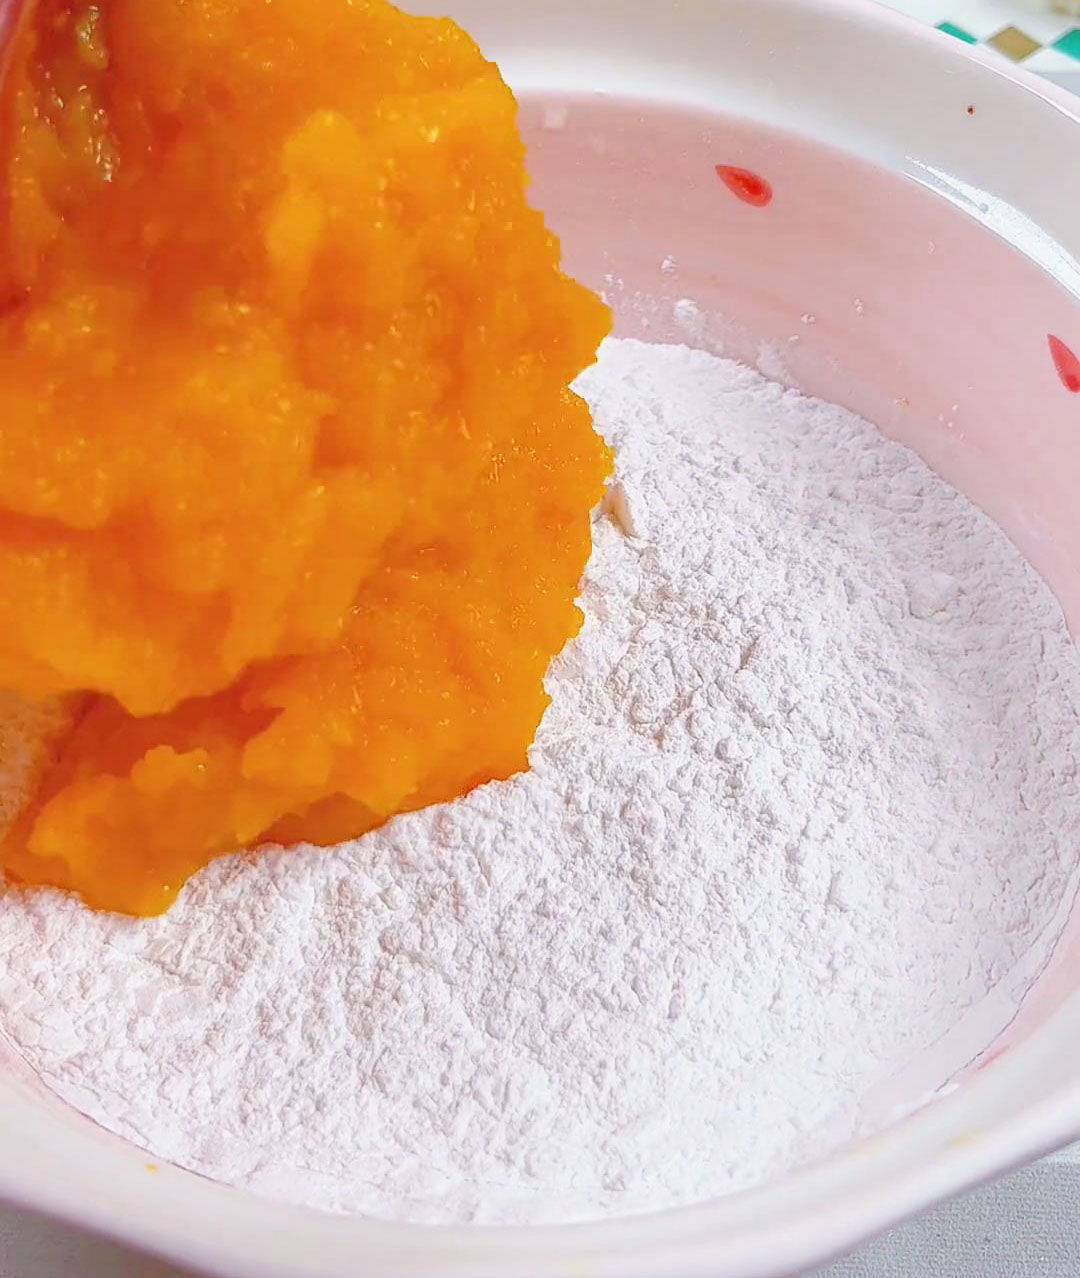 Pour the pumpkin puree into the flour